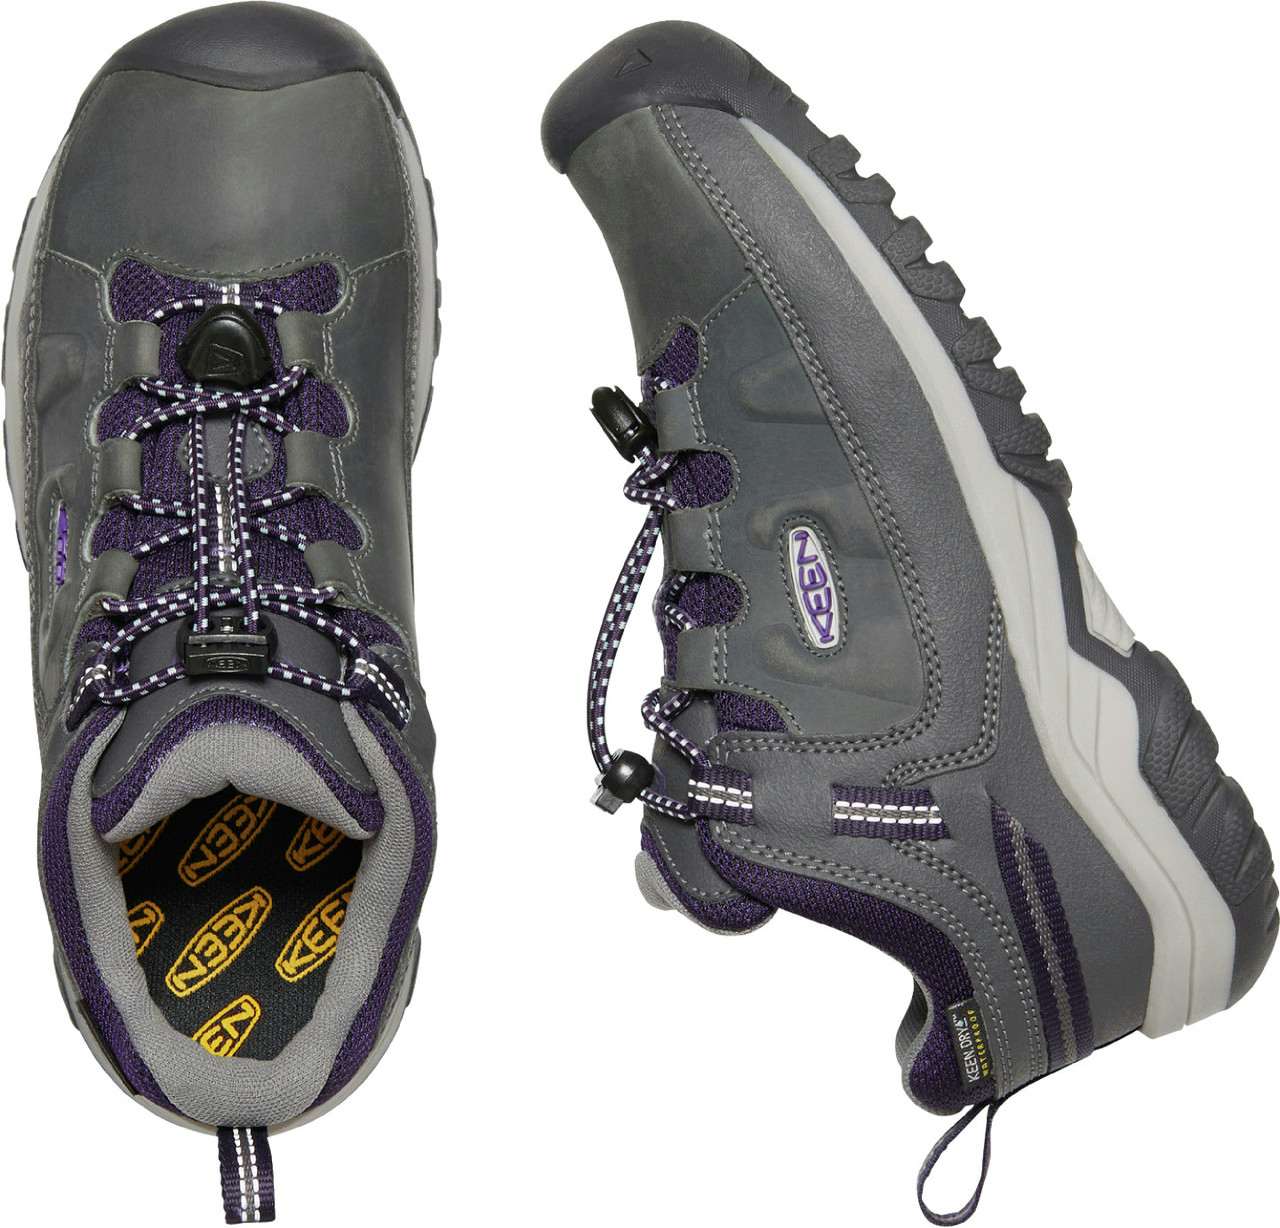 Chaussures imperméables Targhee Low Aimant/Tilla violet